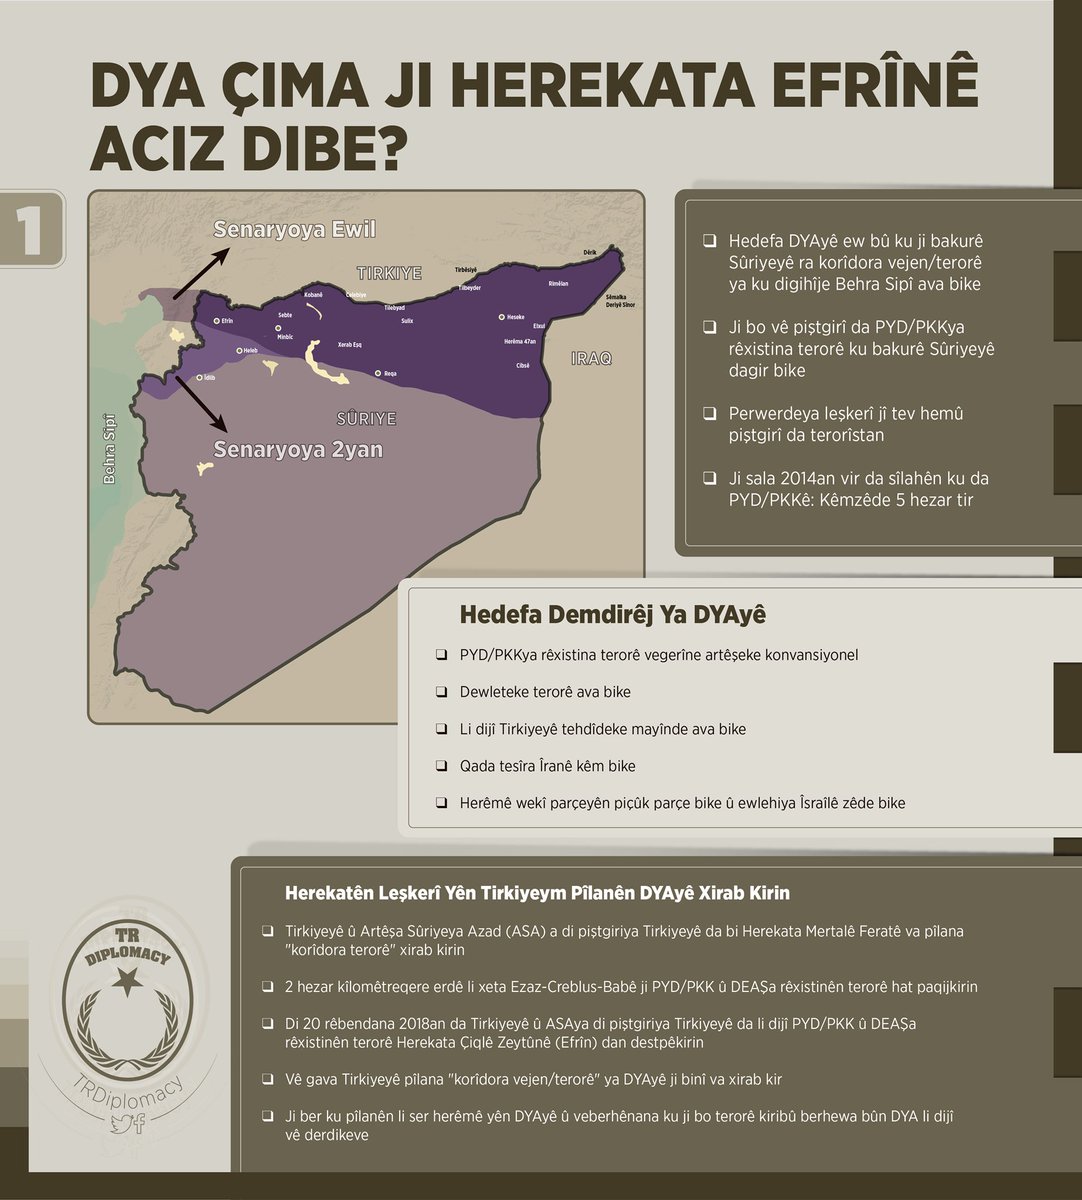 DYA çima ji Herekata Efrînê aciz dibe?